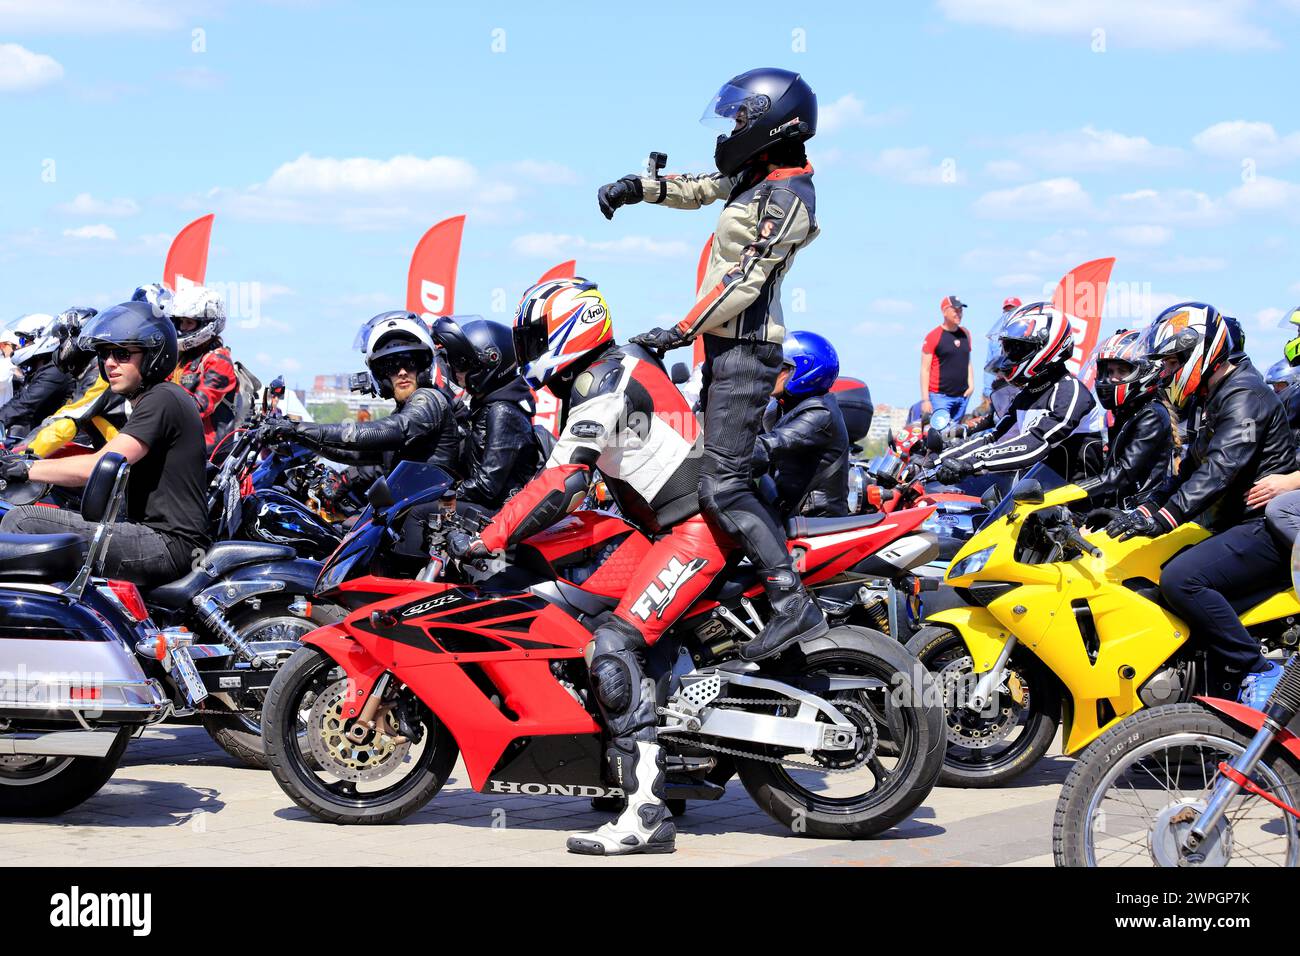 Motocyclistes sur motos fraîches, dans des casques et des vestes en cuir, roulent le long de la route, Motorsport Dnepr, Ukraine, 11 mai 2019. Banque D'Images